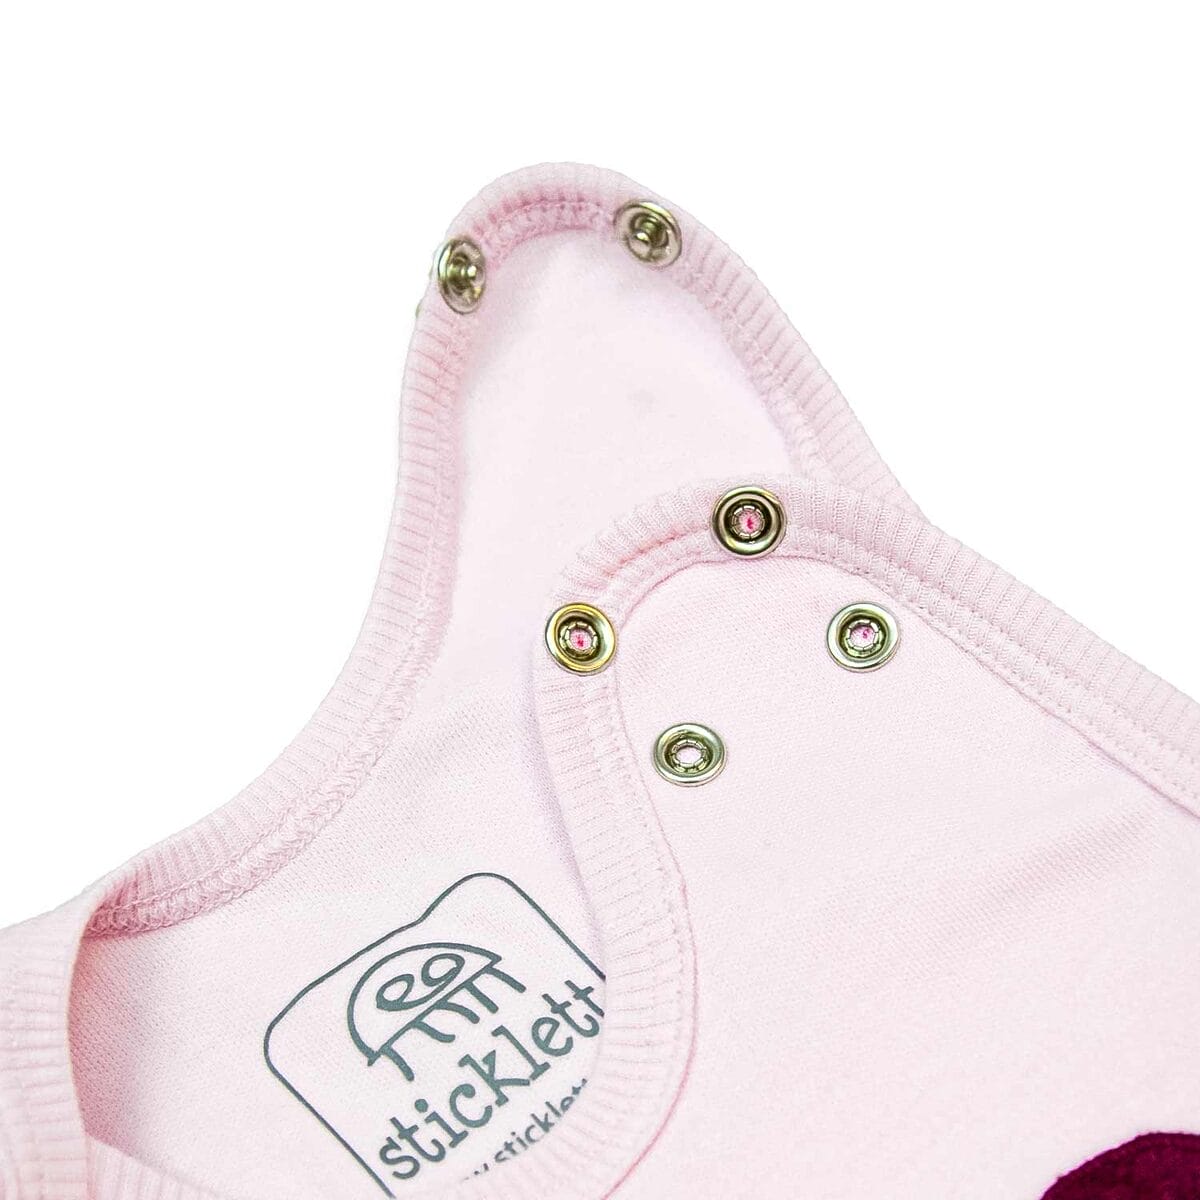 Hochwertiger rosa Babystrampler mit praktischen, verstellbaren Druckknöpfen und einem dezenten Markenlogo, ideal für wachsende Babys.